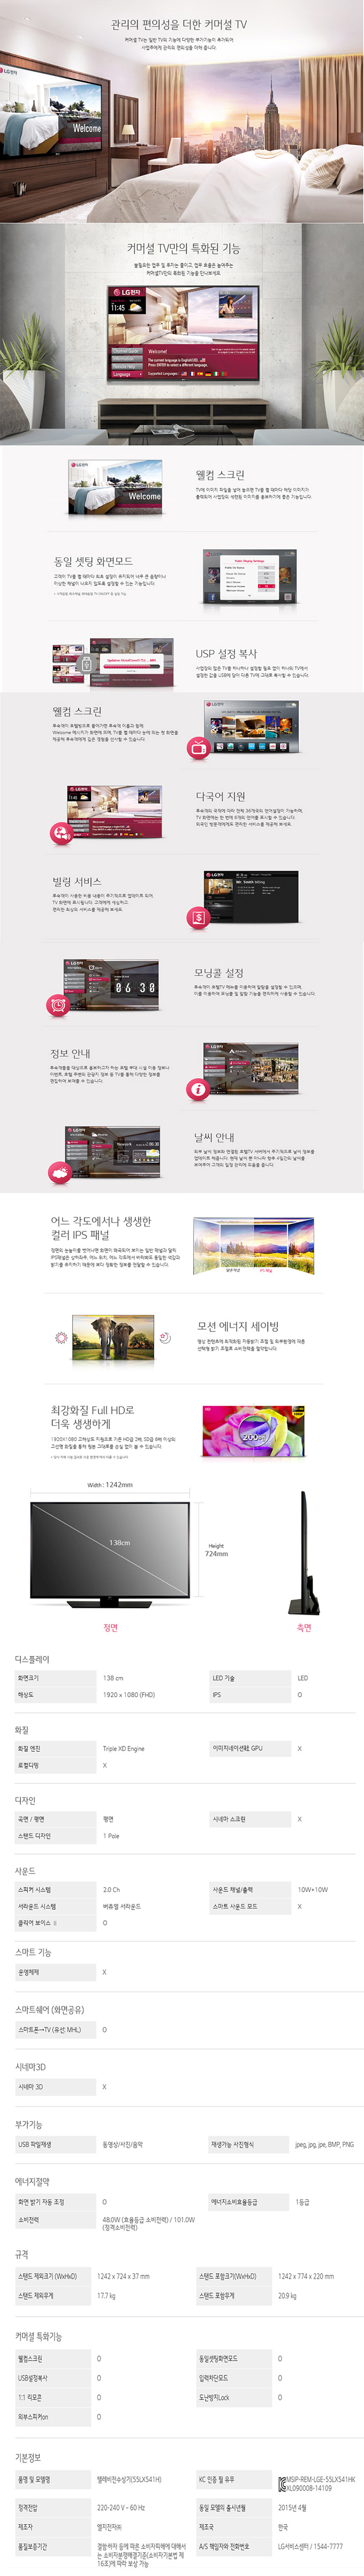 강남케이블 - LG 55인치 UHD TV (55LV540H) 상세보기